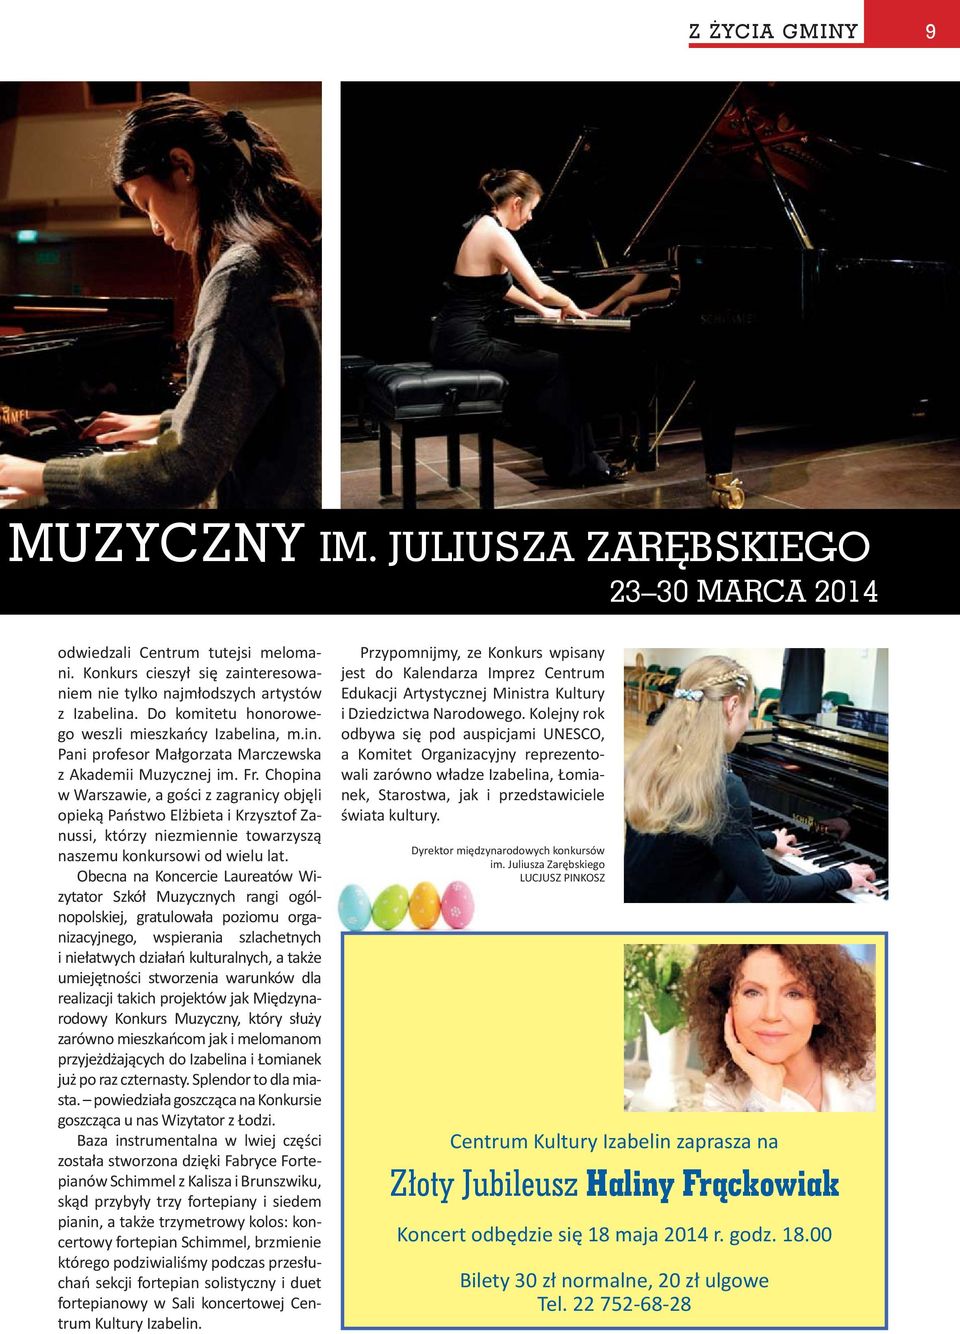 Chopina w Warszawie, a gości z zagranicy objęli opieką Państwo Elżbieta i Krzysztof Zanussi, którzy niezmiennie towarzyszą naszemu konkursowi od wielu lat.